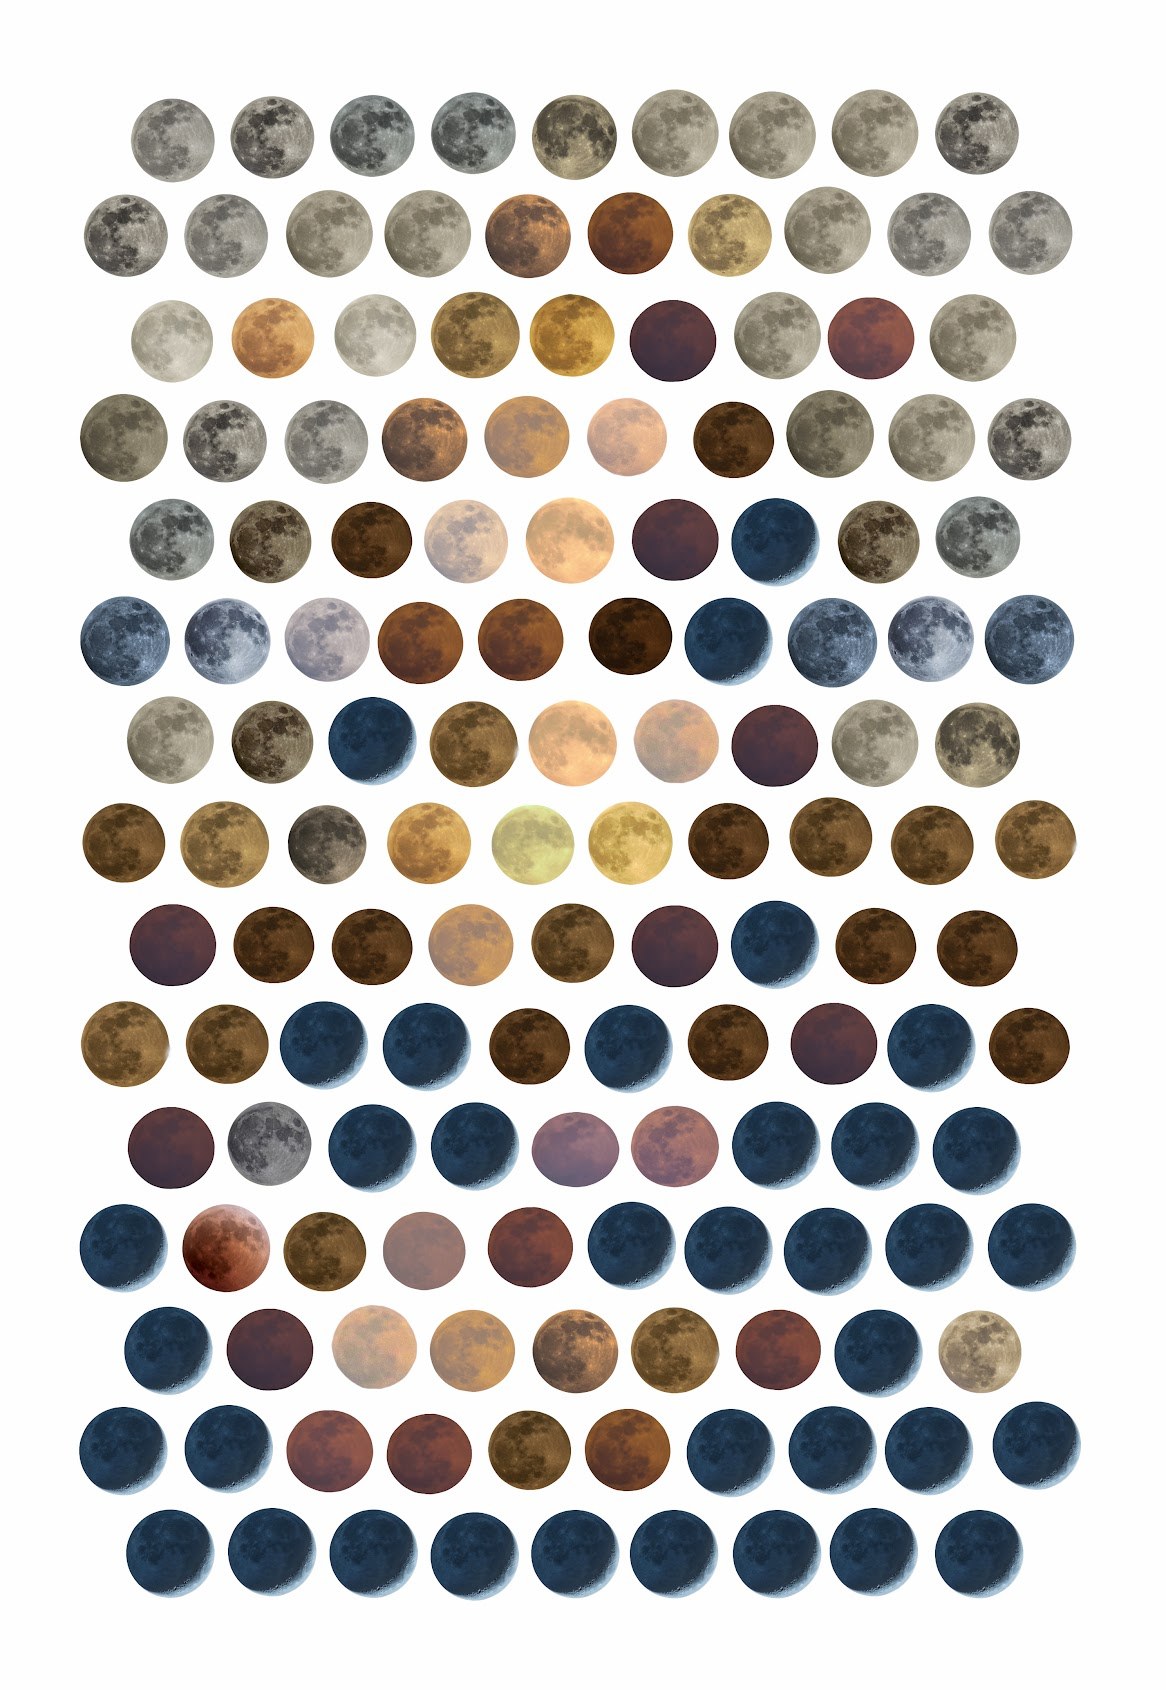 صورة توحي بلوحة الموناليزا الشهيرة مصنوعة من تراصف أقراص قمريّة بألوان متعدّدة كبكسلات لتصنع الصورة الكاملة.